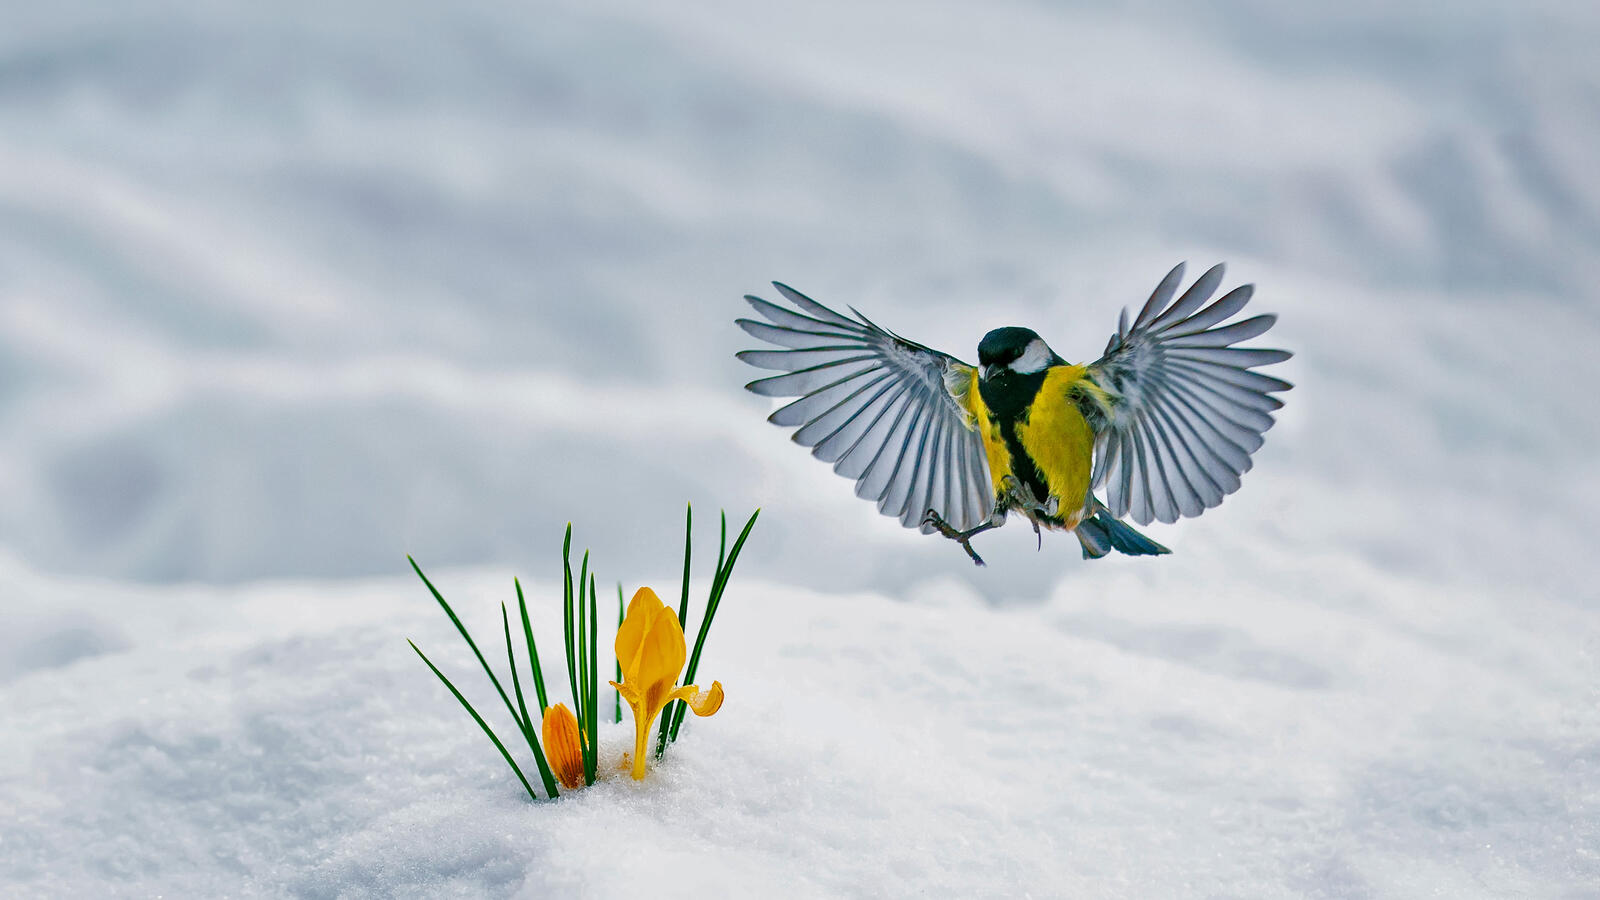 免费照片一只山雀飞向一朵伸出雪地的花朵。